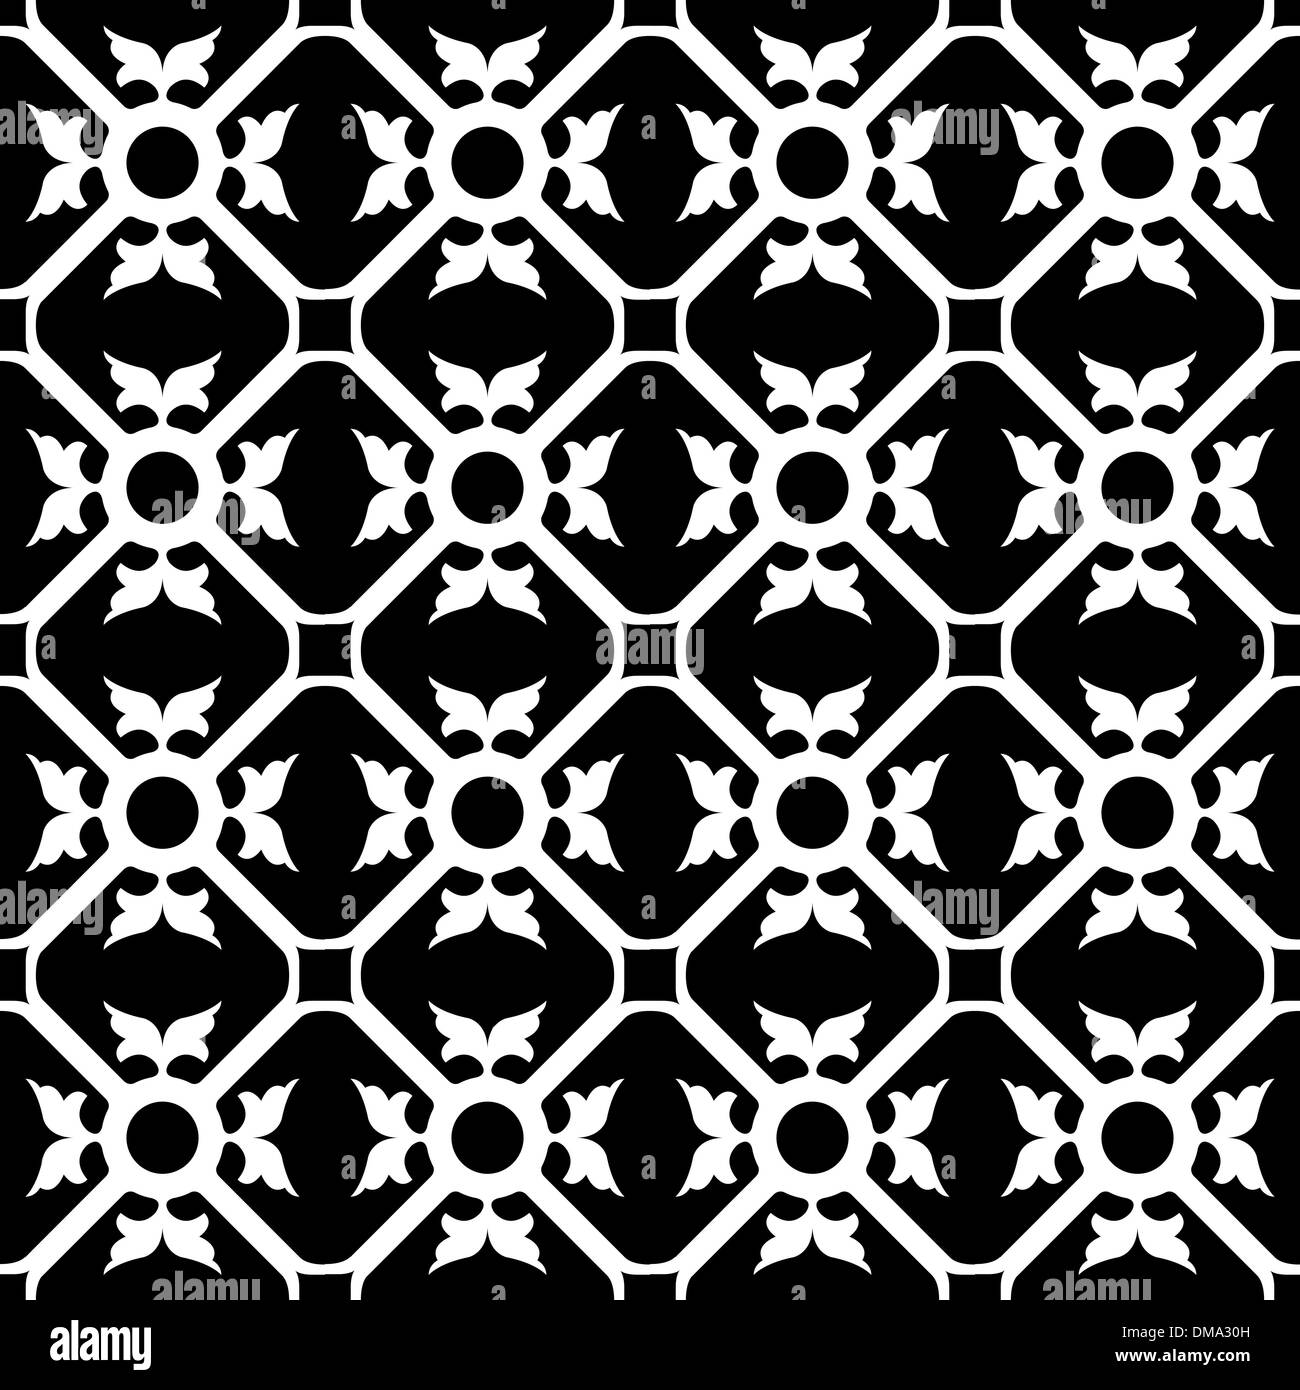 symmetrical flower pattern Stock Vector